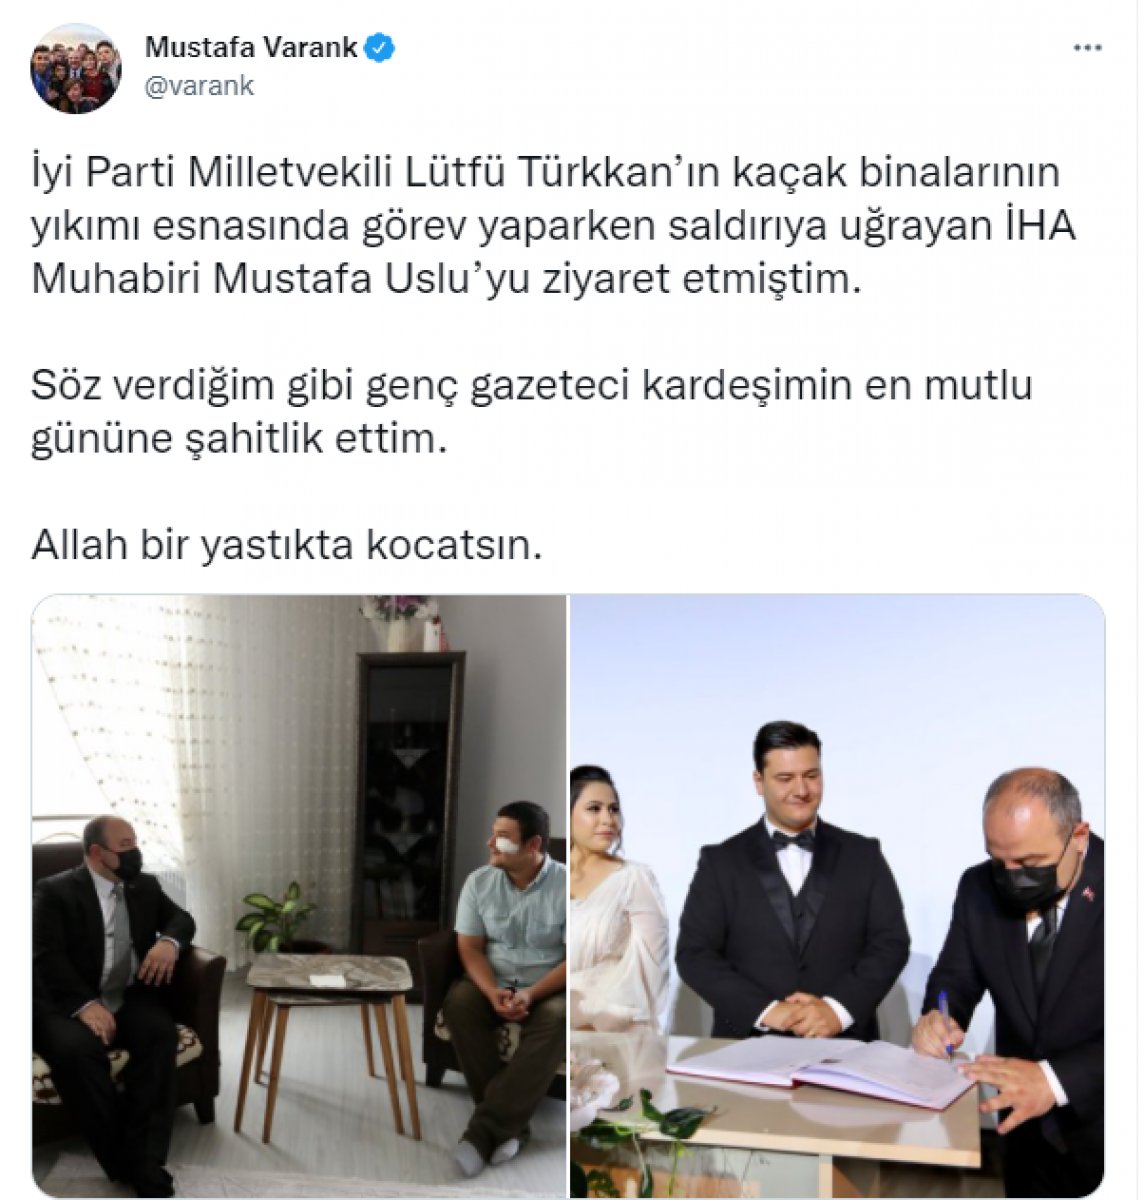 Darbedilen İHA Muhabiri Mustafa Uslu evlendi #2